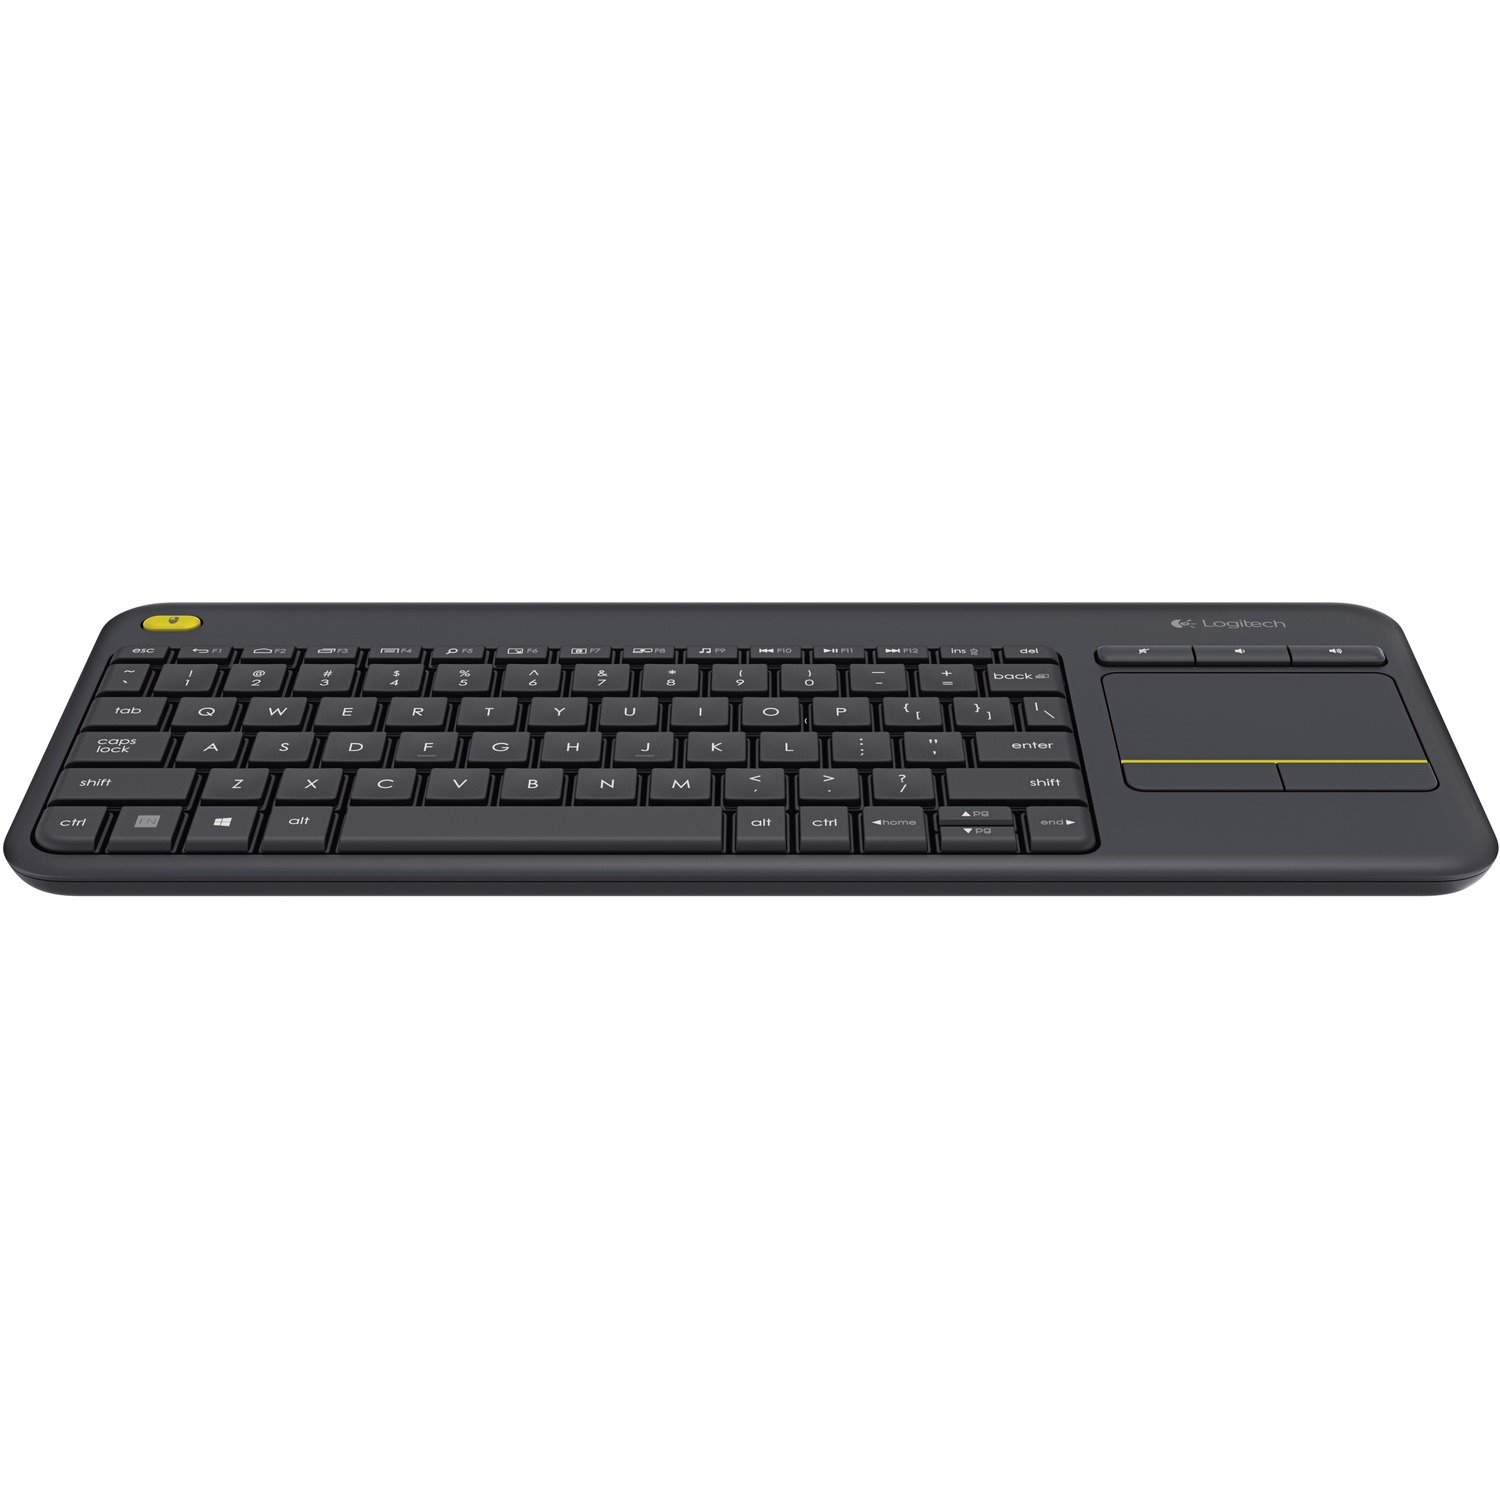 Logitech K400 Plus Keyboard - Wireless Connectivity - USB Interface - TouchPad - English (UK) - QWERTY Layout - Black